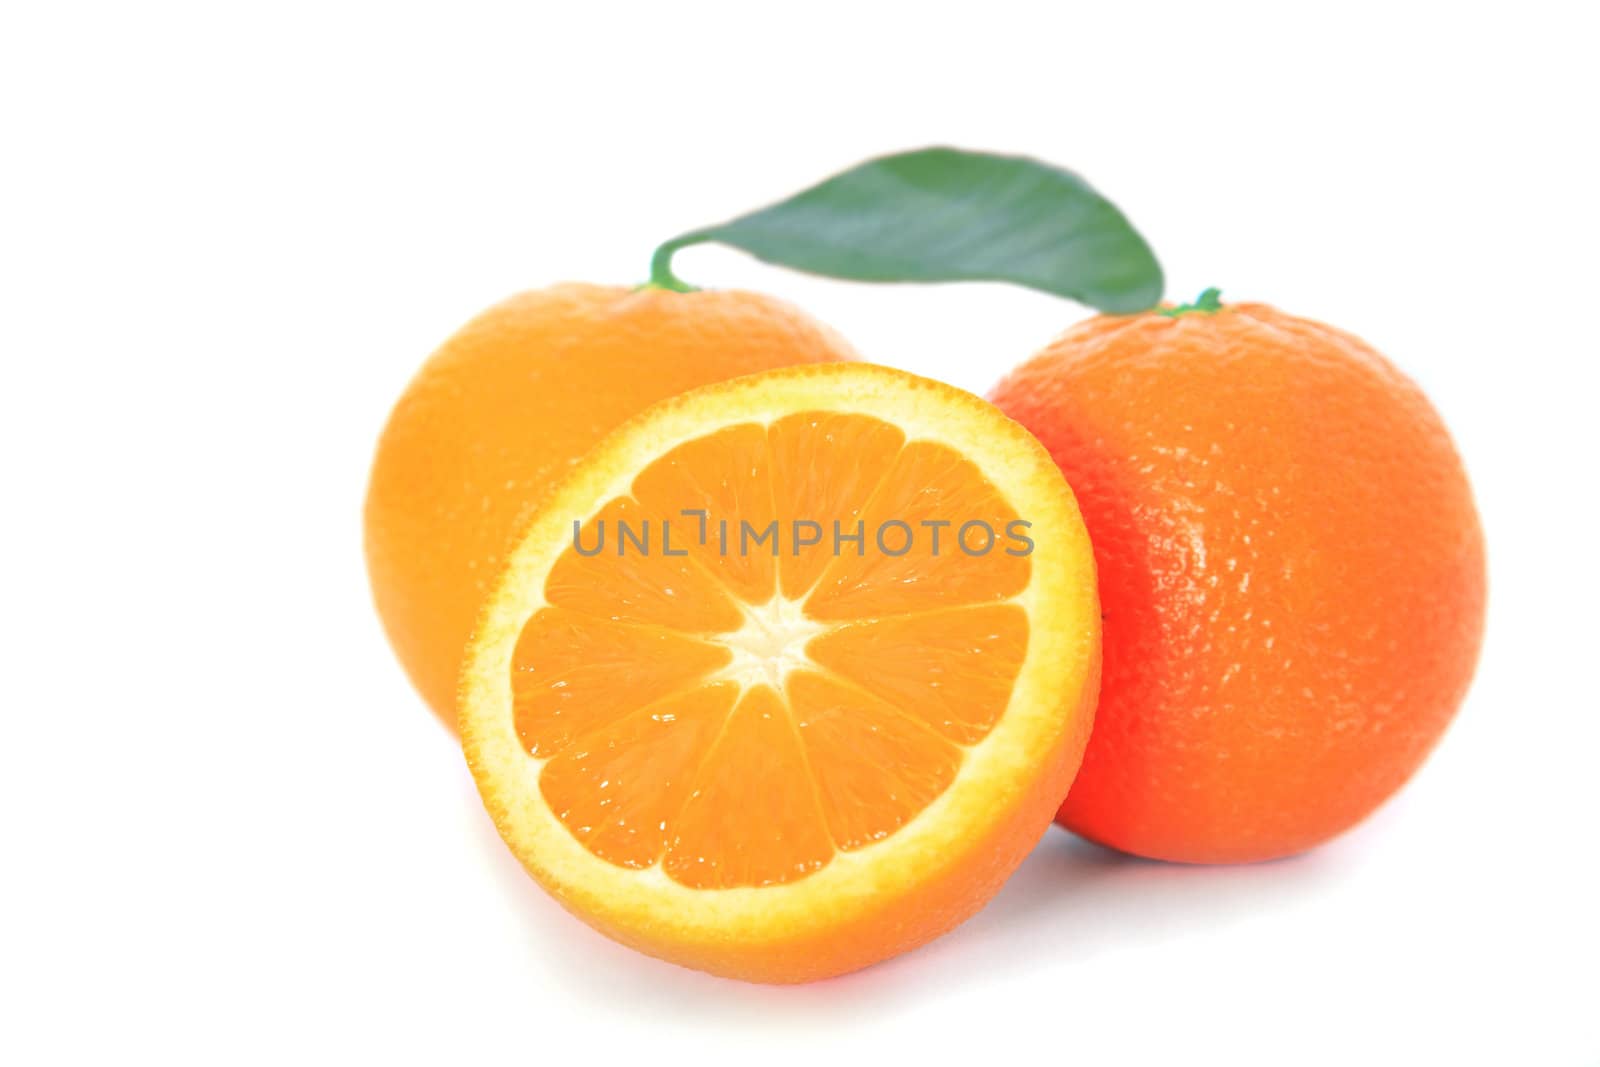 Oranges by kaarsten